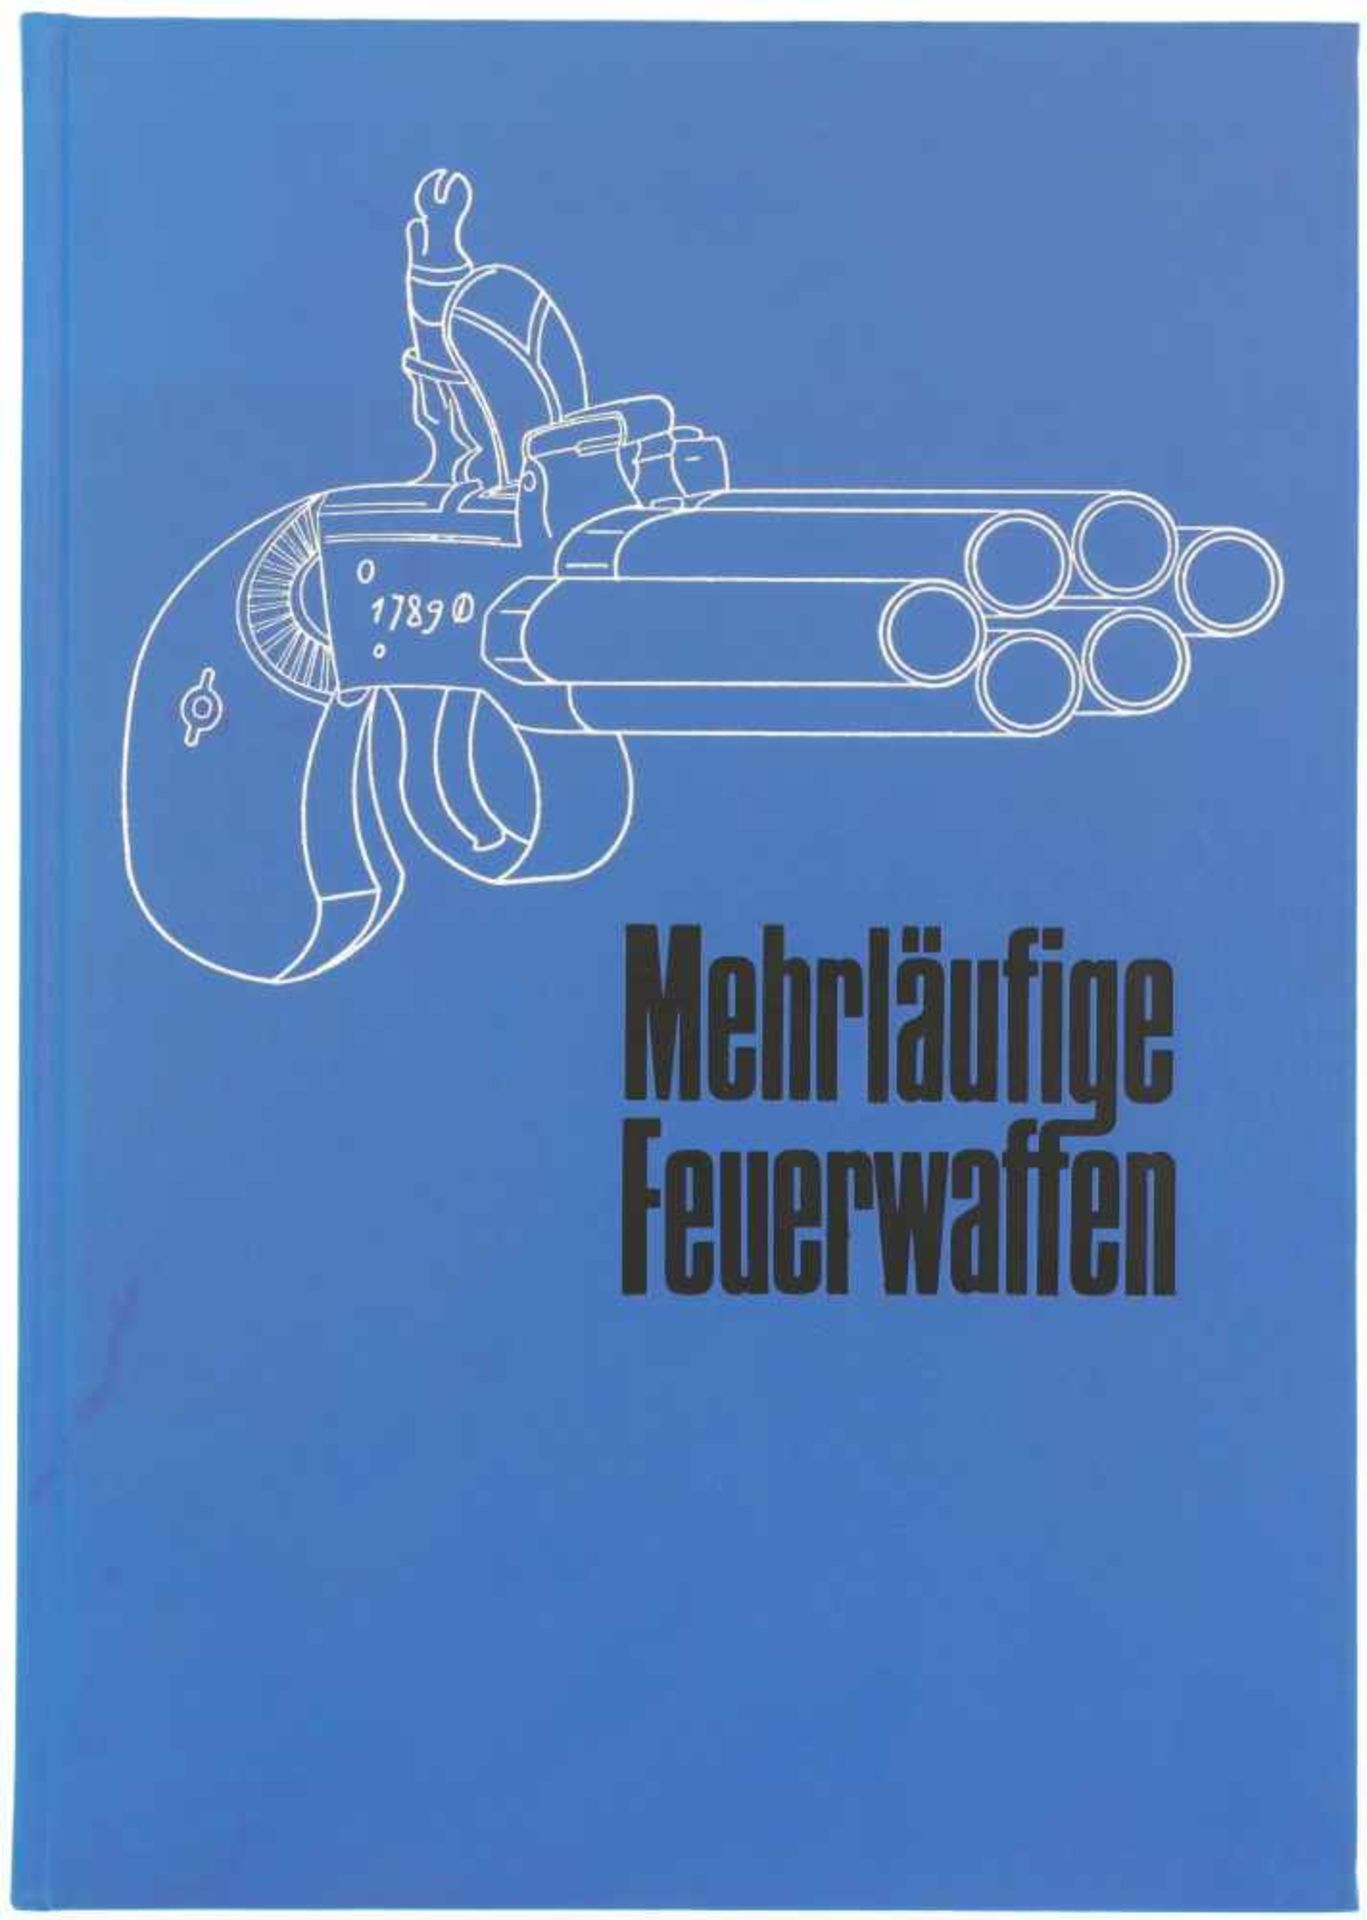 Mehrläufige Feuerwaffen 1. Auflage 1973, Autor Hans Gerd Müller, 151 Seiten, diverse schwarz-weiss